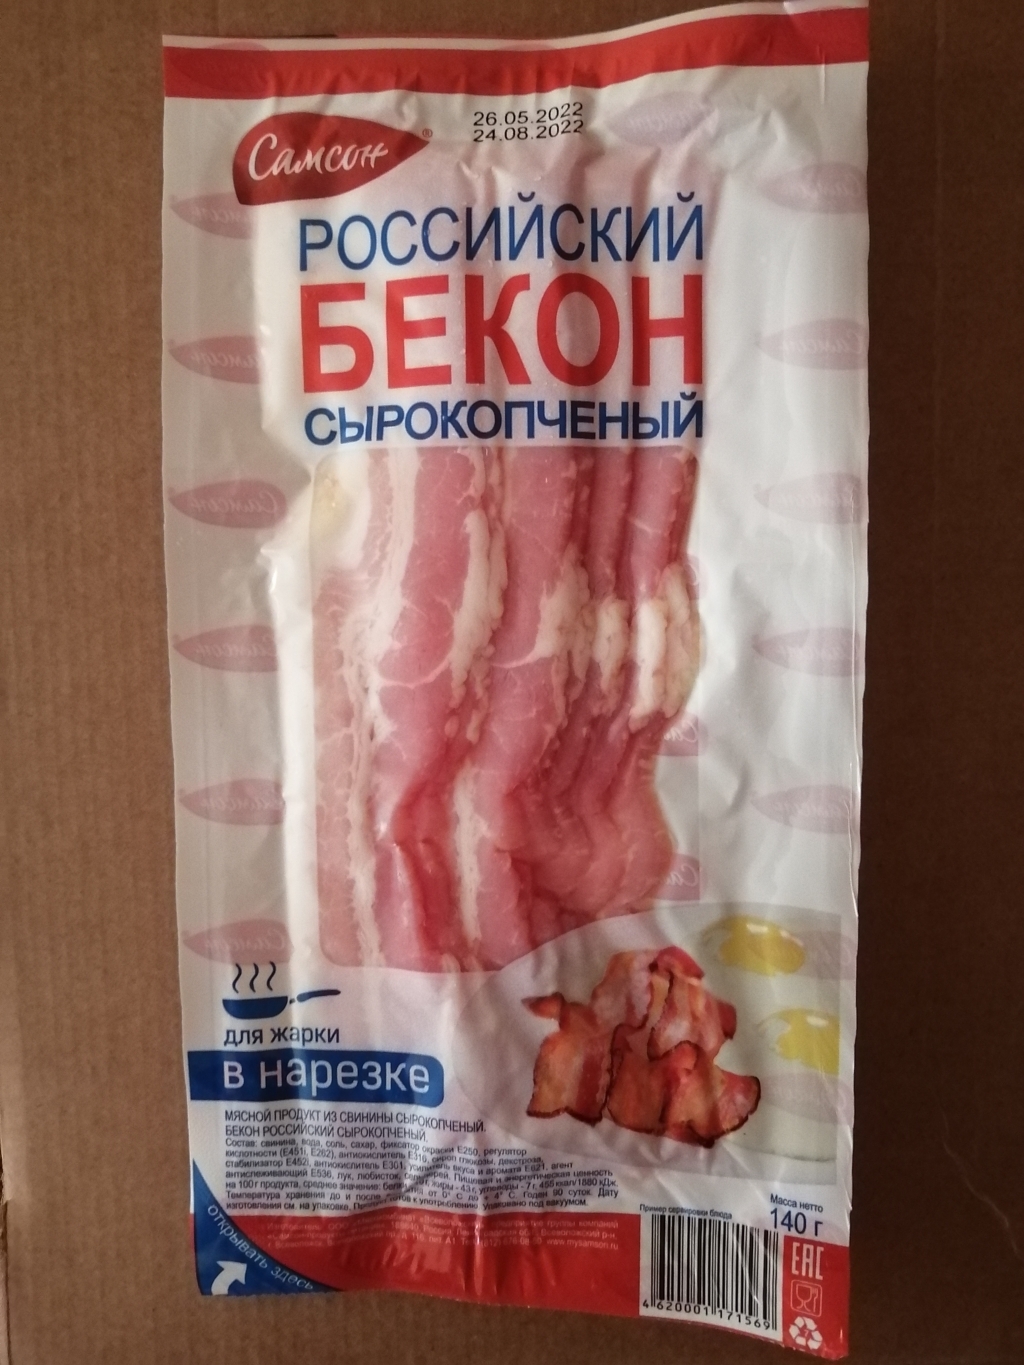 Бекон Российский сырокопченый Самсон - Действительно вкусный бекон